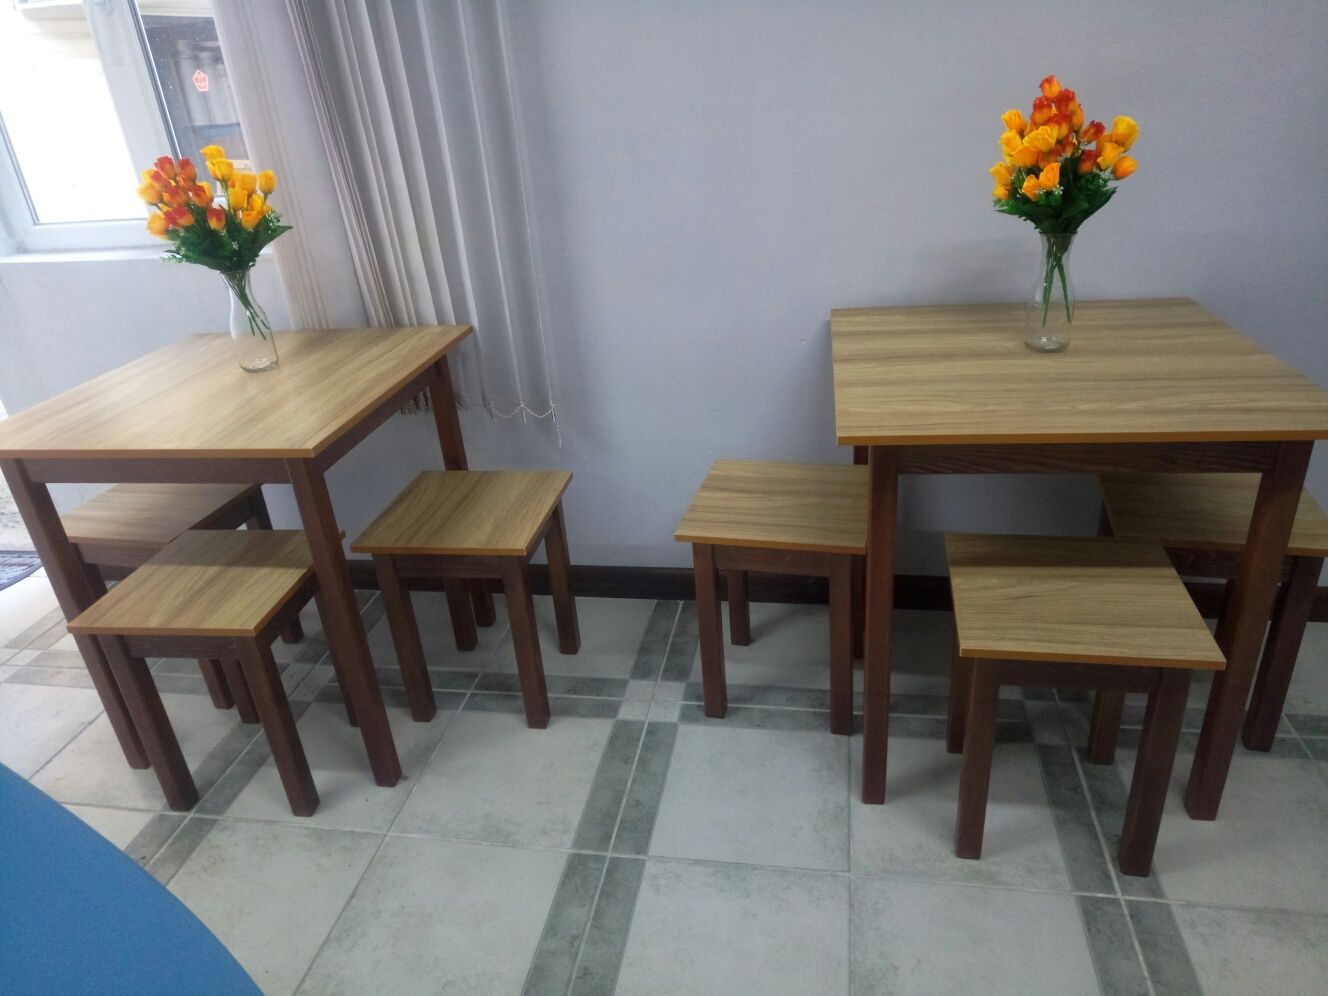 2 новых деревянных стола (70*70 см) без табуретов